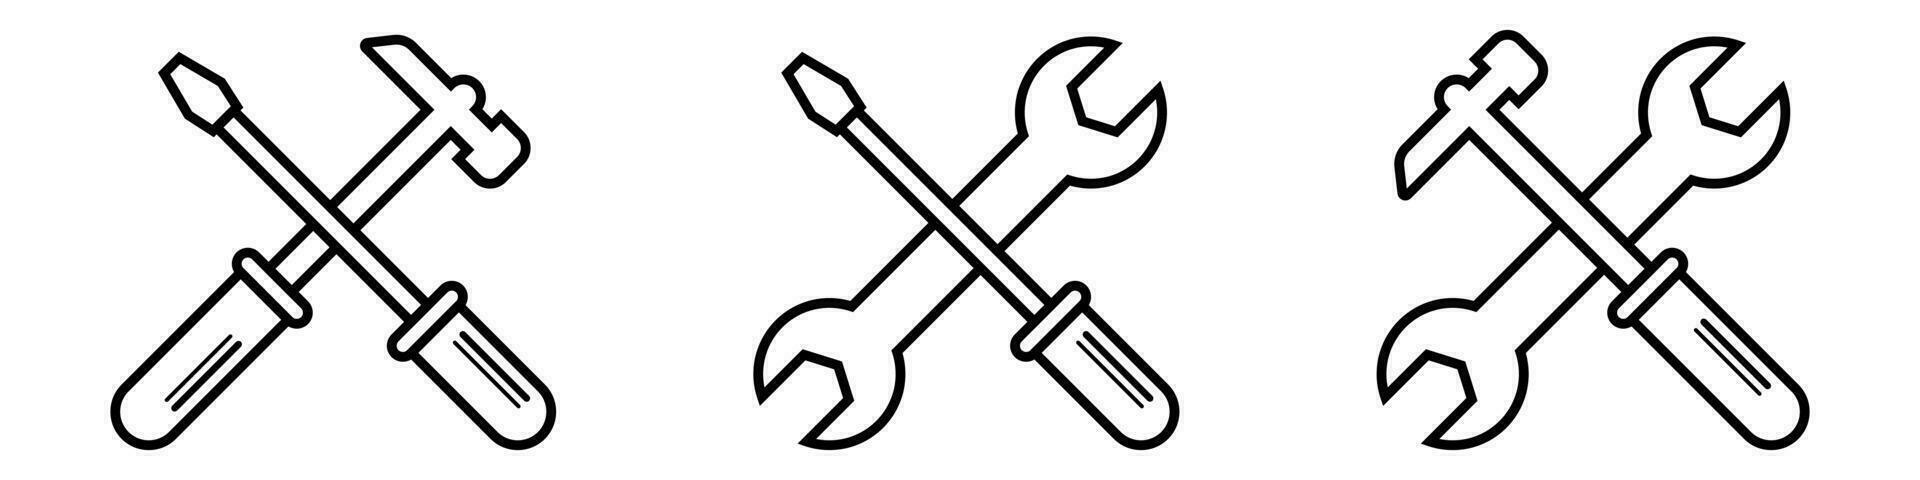 contorno reparar Servicio caja de herramientas mantenimiento llave y martillo silueta iconos aislado llave inglesa y destornillador símbolos en blanco antecedentes. ajustes pictograma. vector eps 10